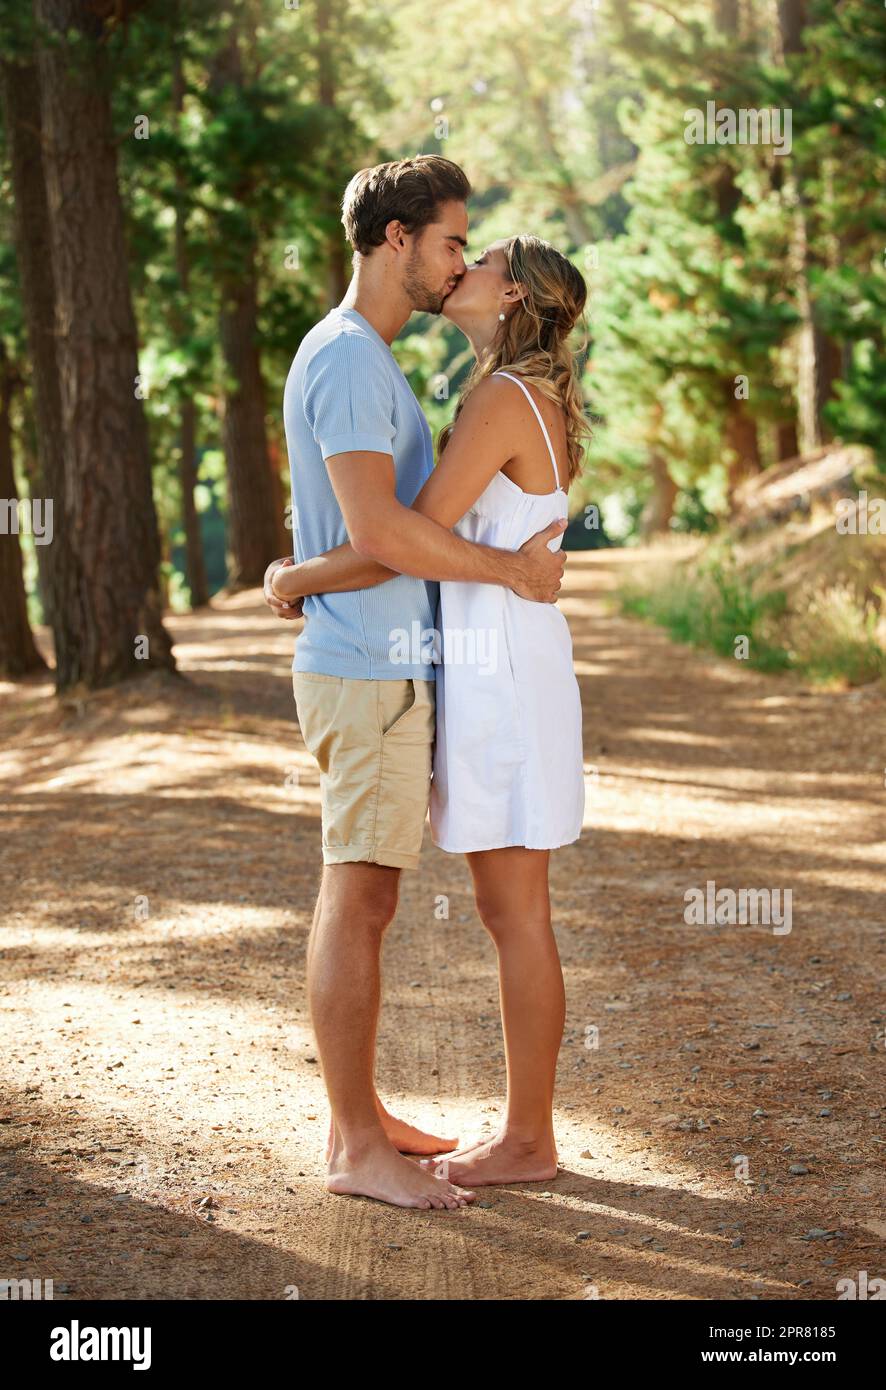 Je t'aime et j'aime l'exprimer. Photo d'un jeune couple partageant un baiser tout en explorant le plein air. Banque D'Images